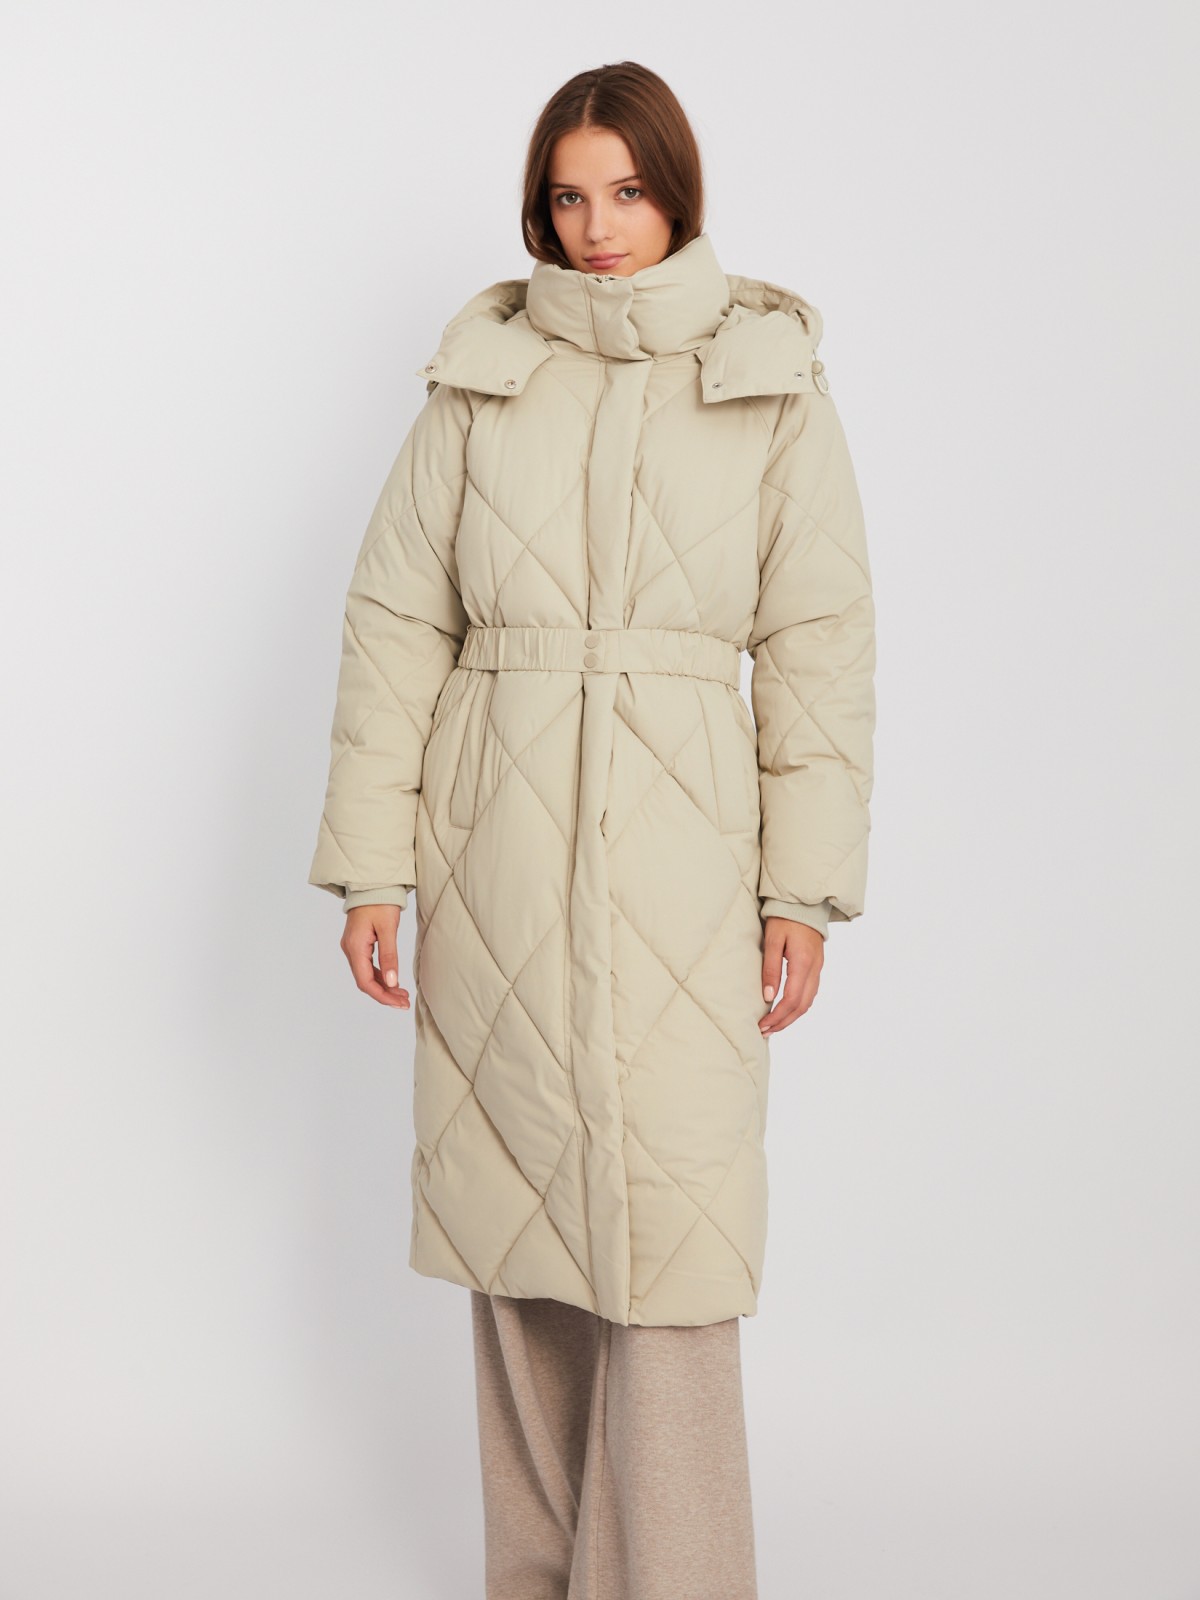 Тёплая стёганая куртка-пальто с капюшоном и поясом zolla 023425272134, цвет бежевый, размер XS - фото 3